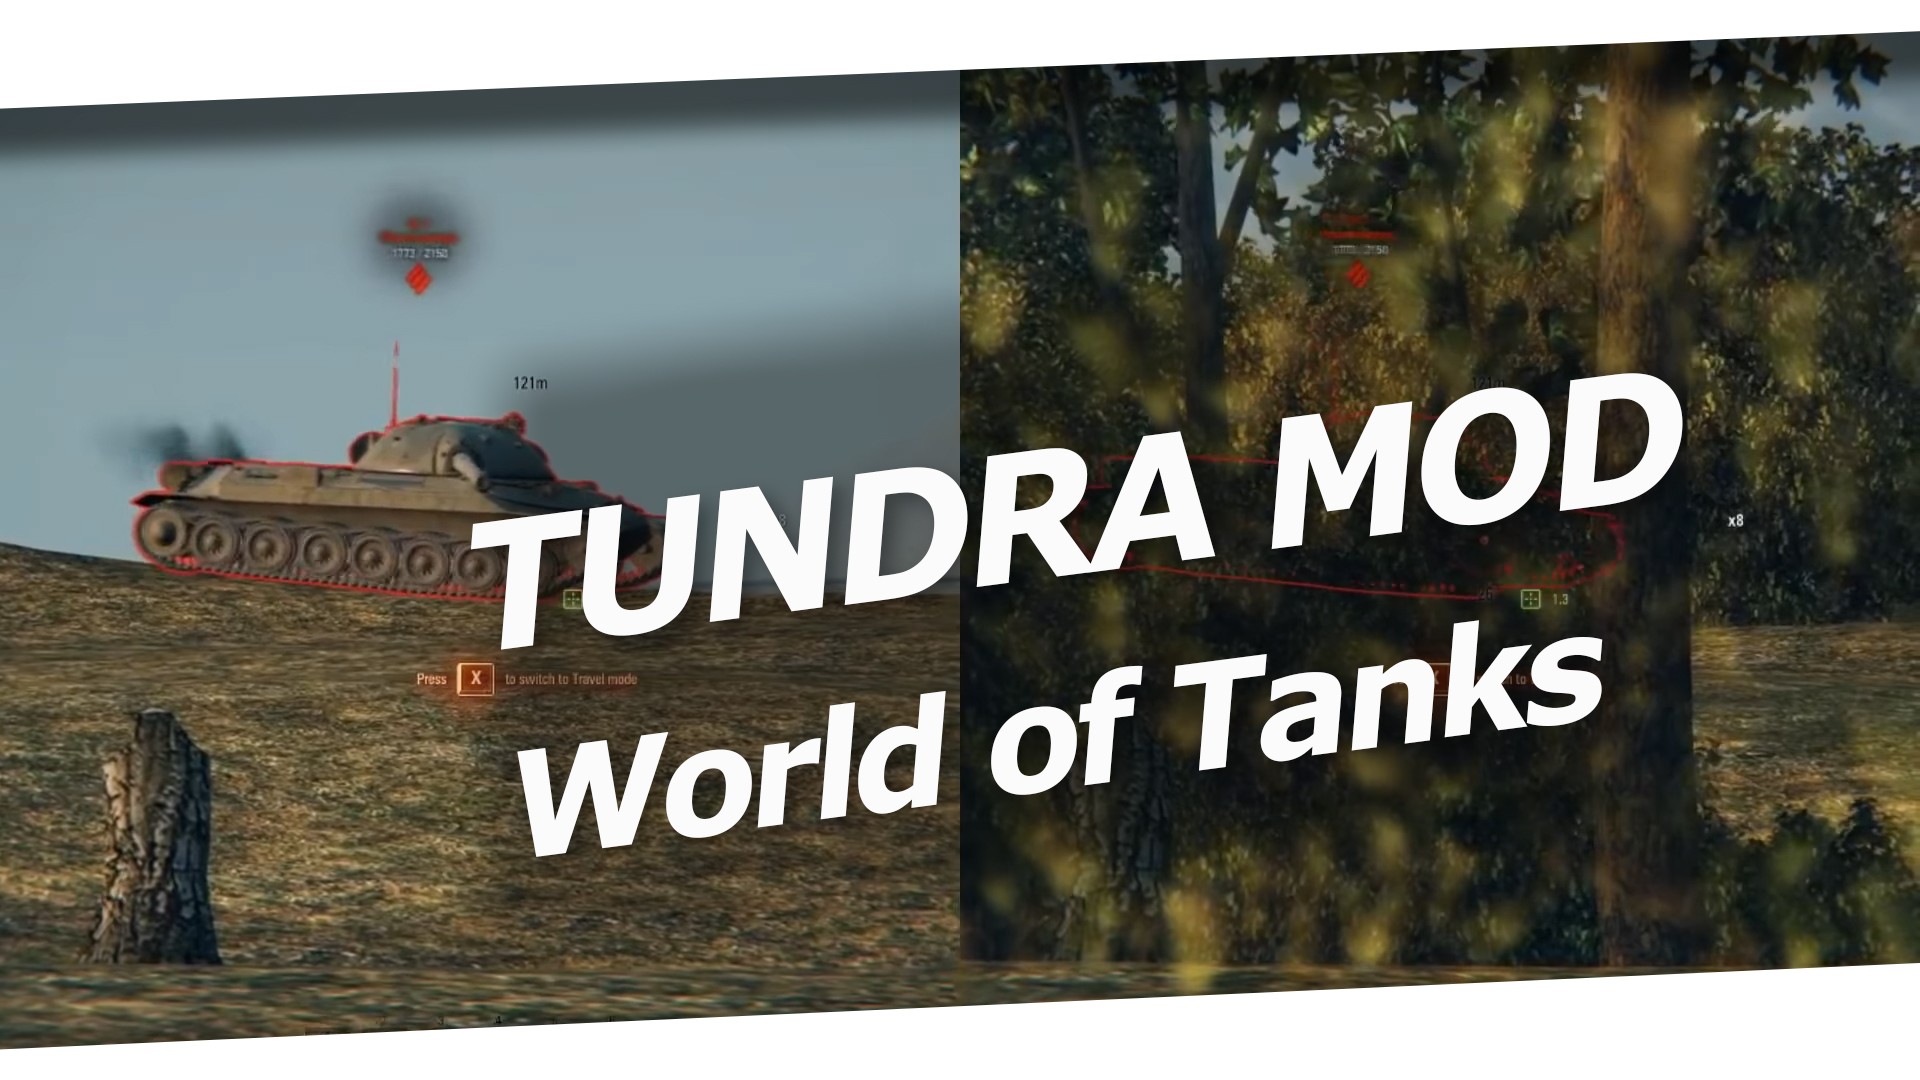 Tundra World of Tanks